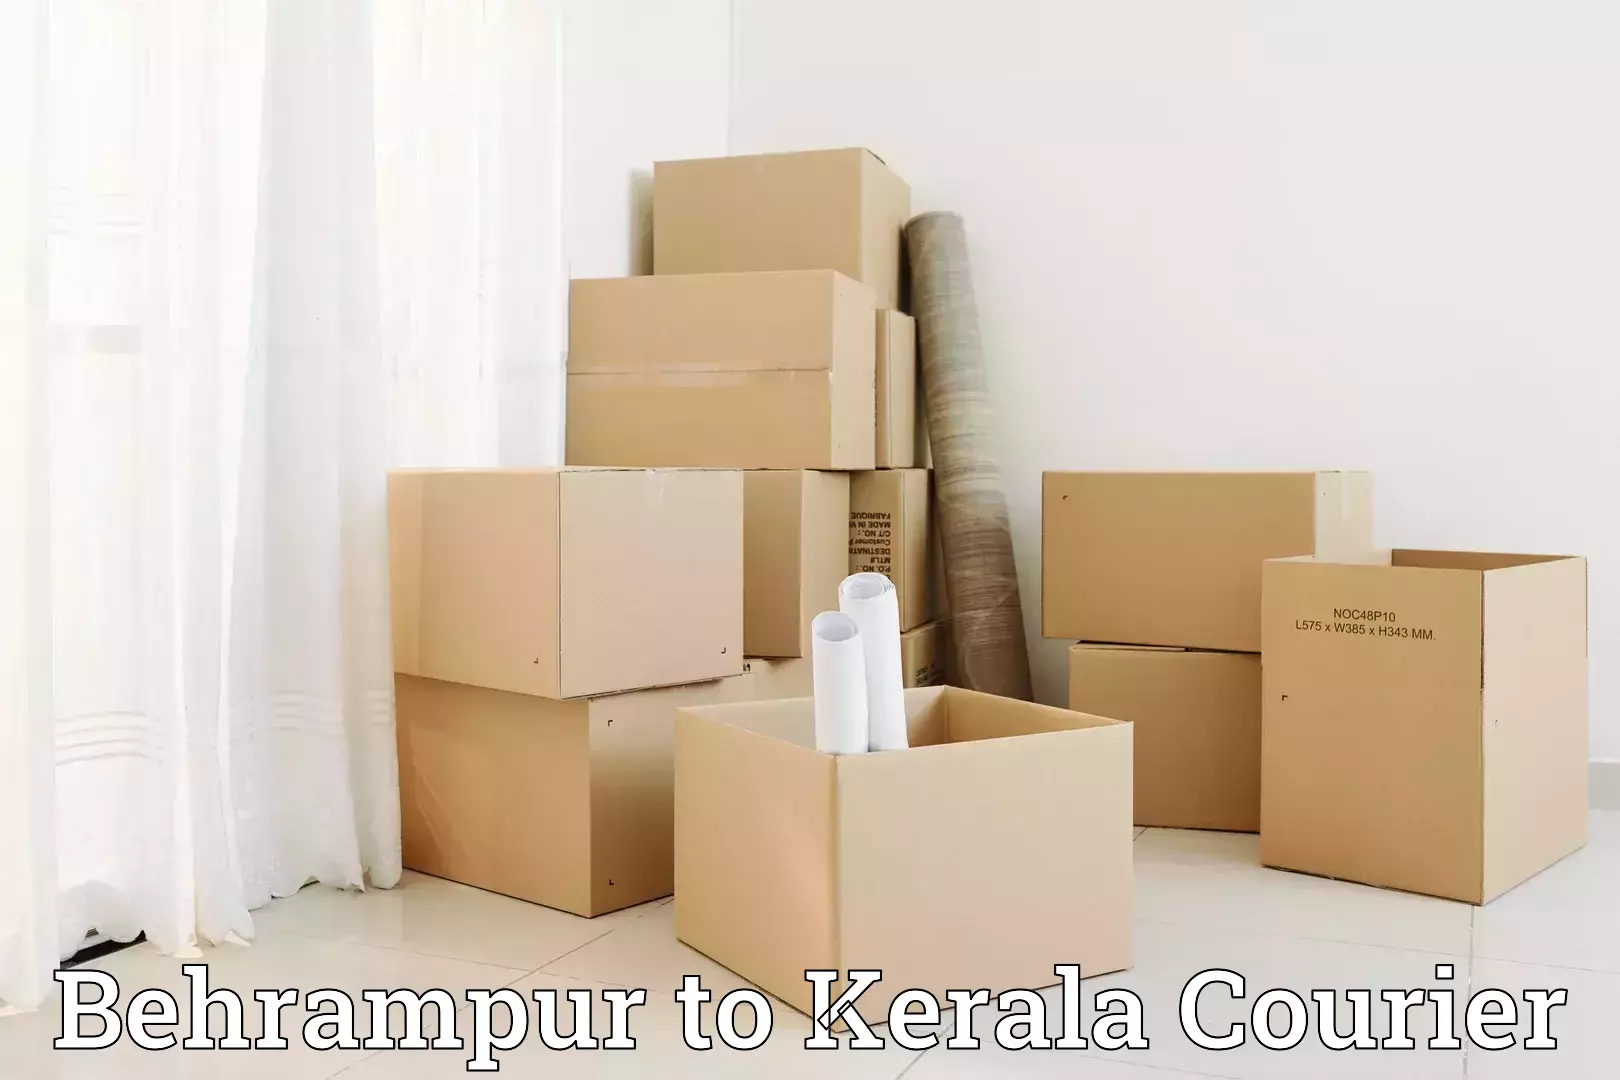 Moving and packing experts Behrampur to Tirurangadi